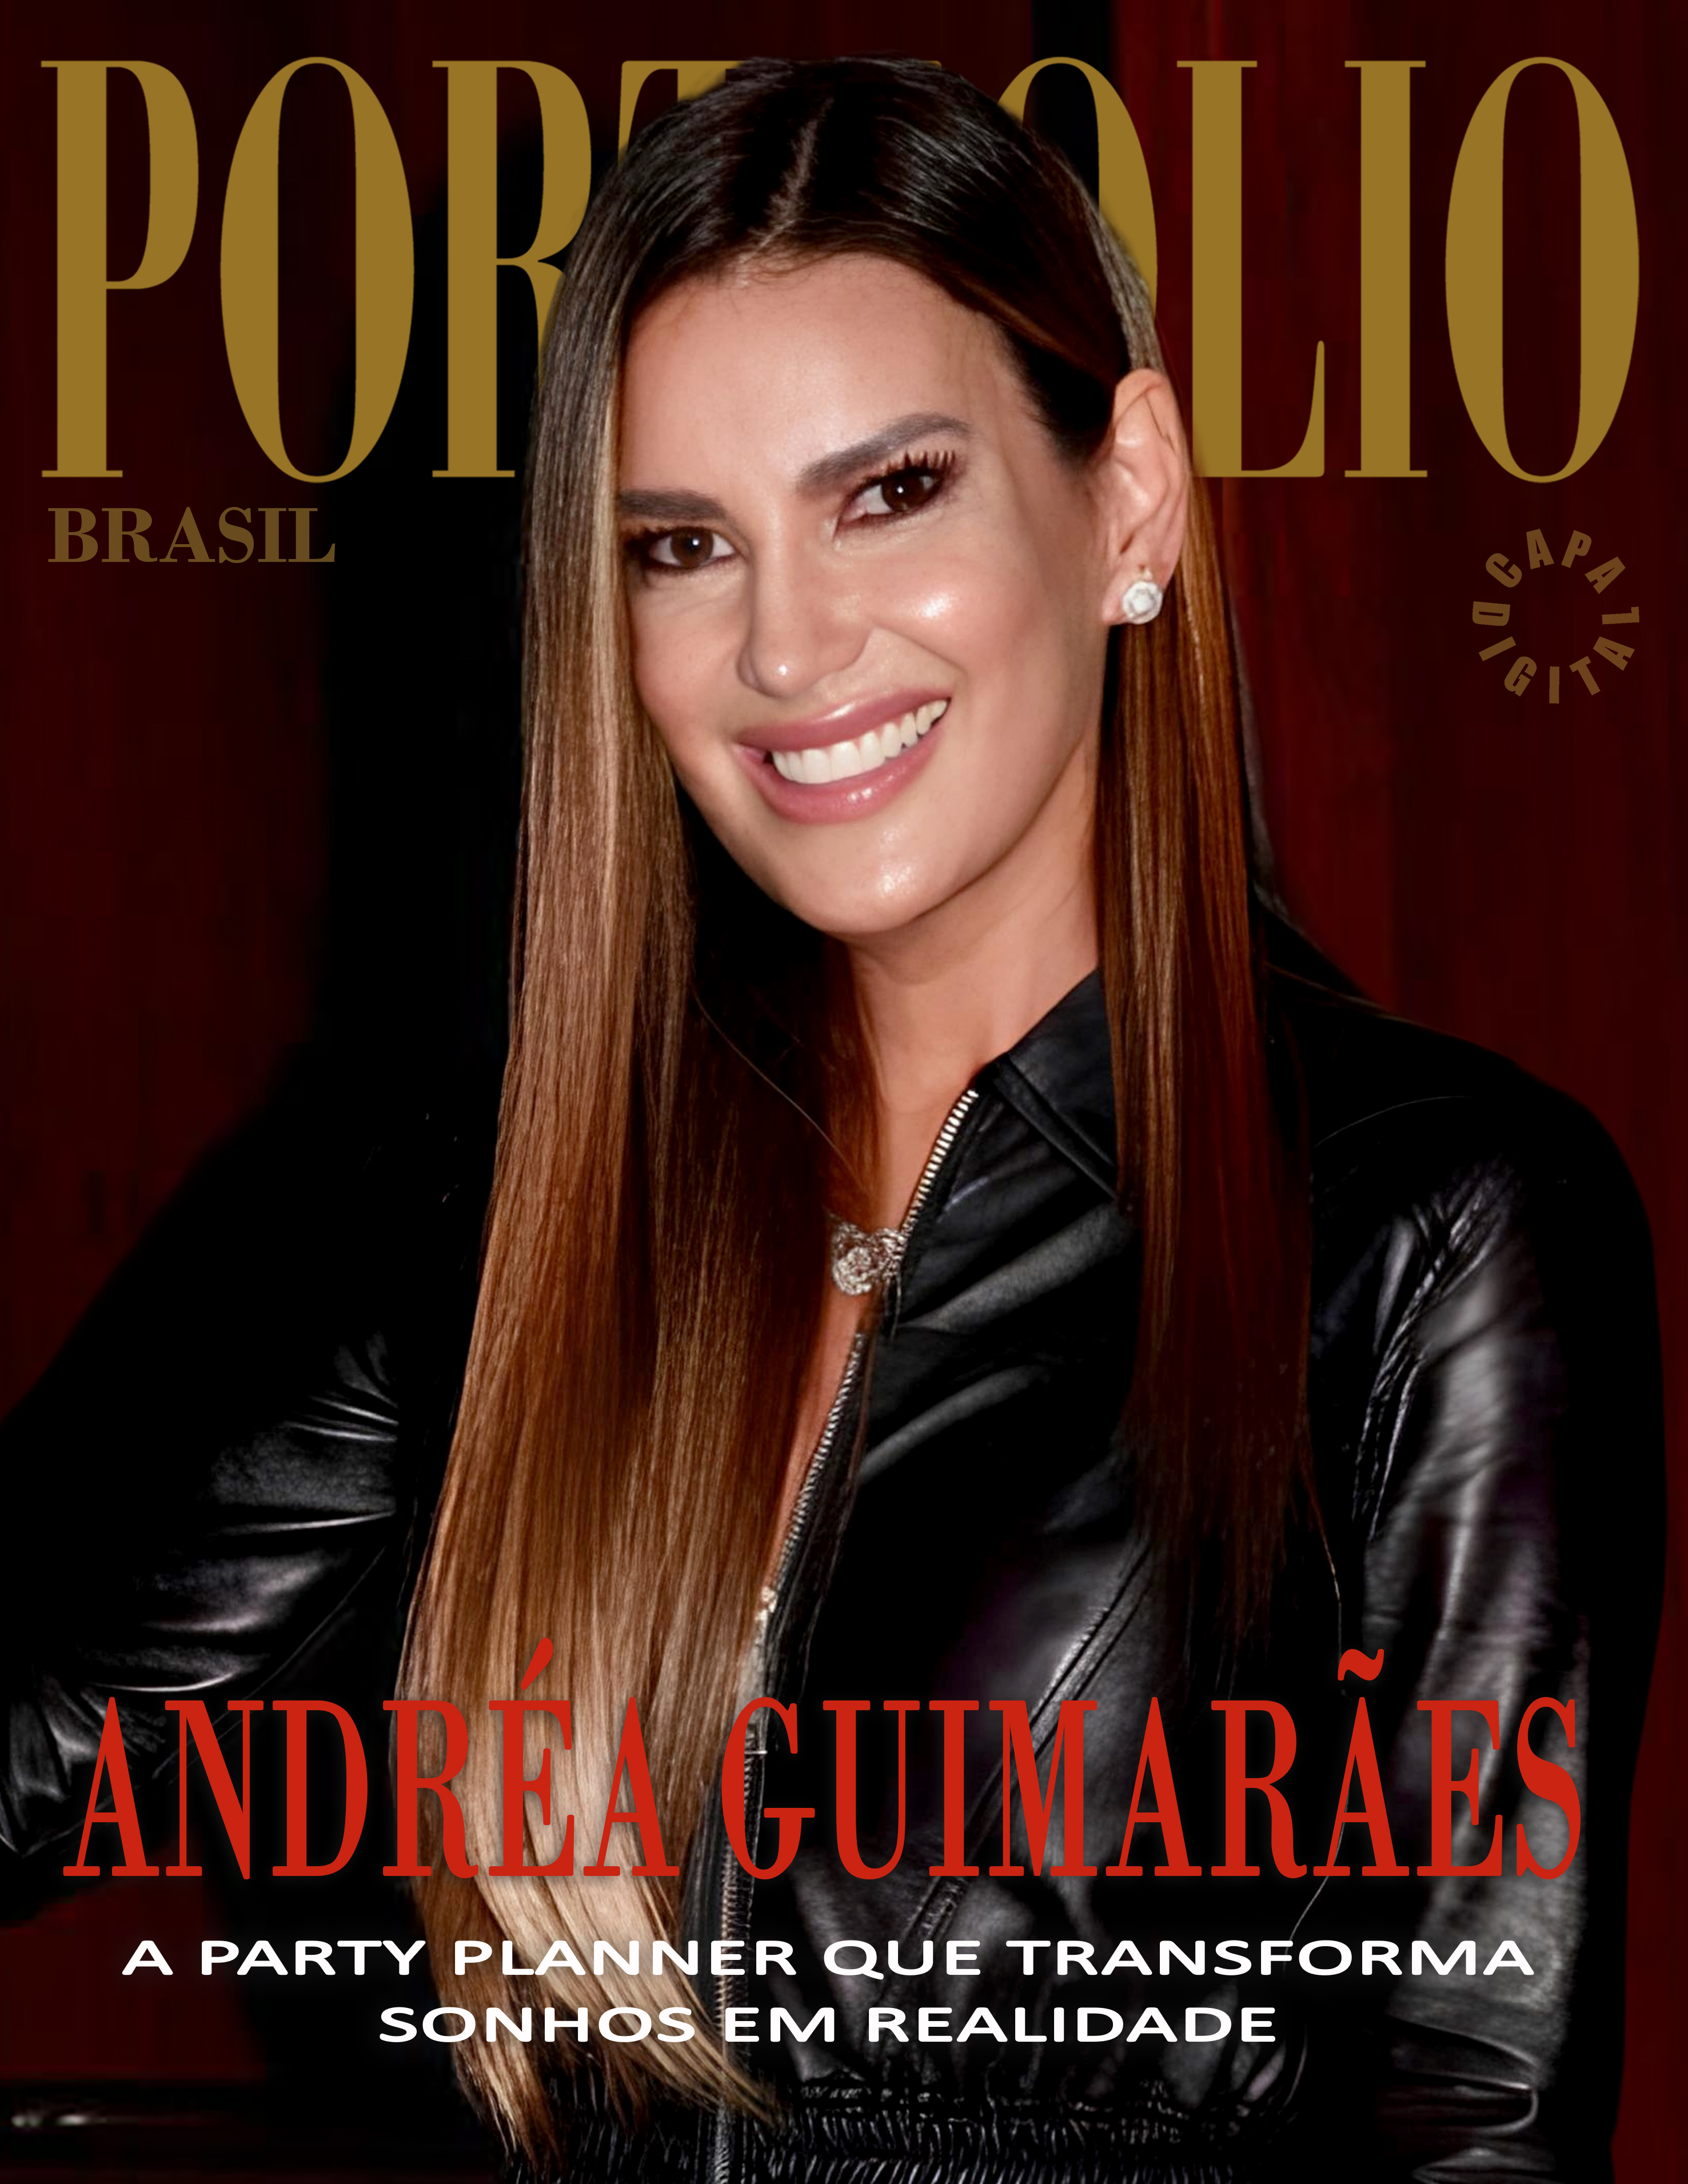 Luiz Alberto entrevista Andréa Guimarães